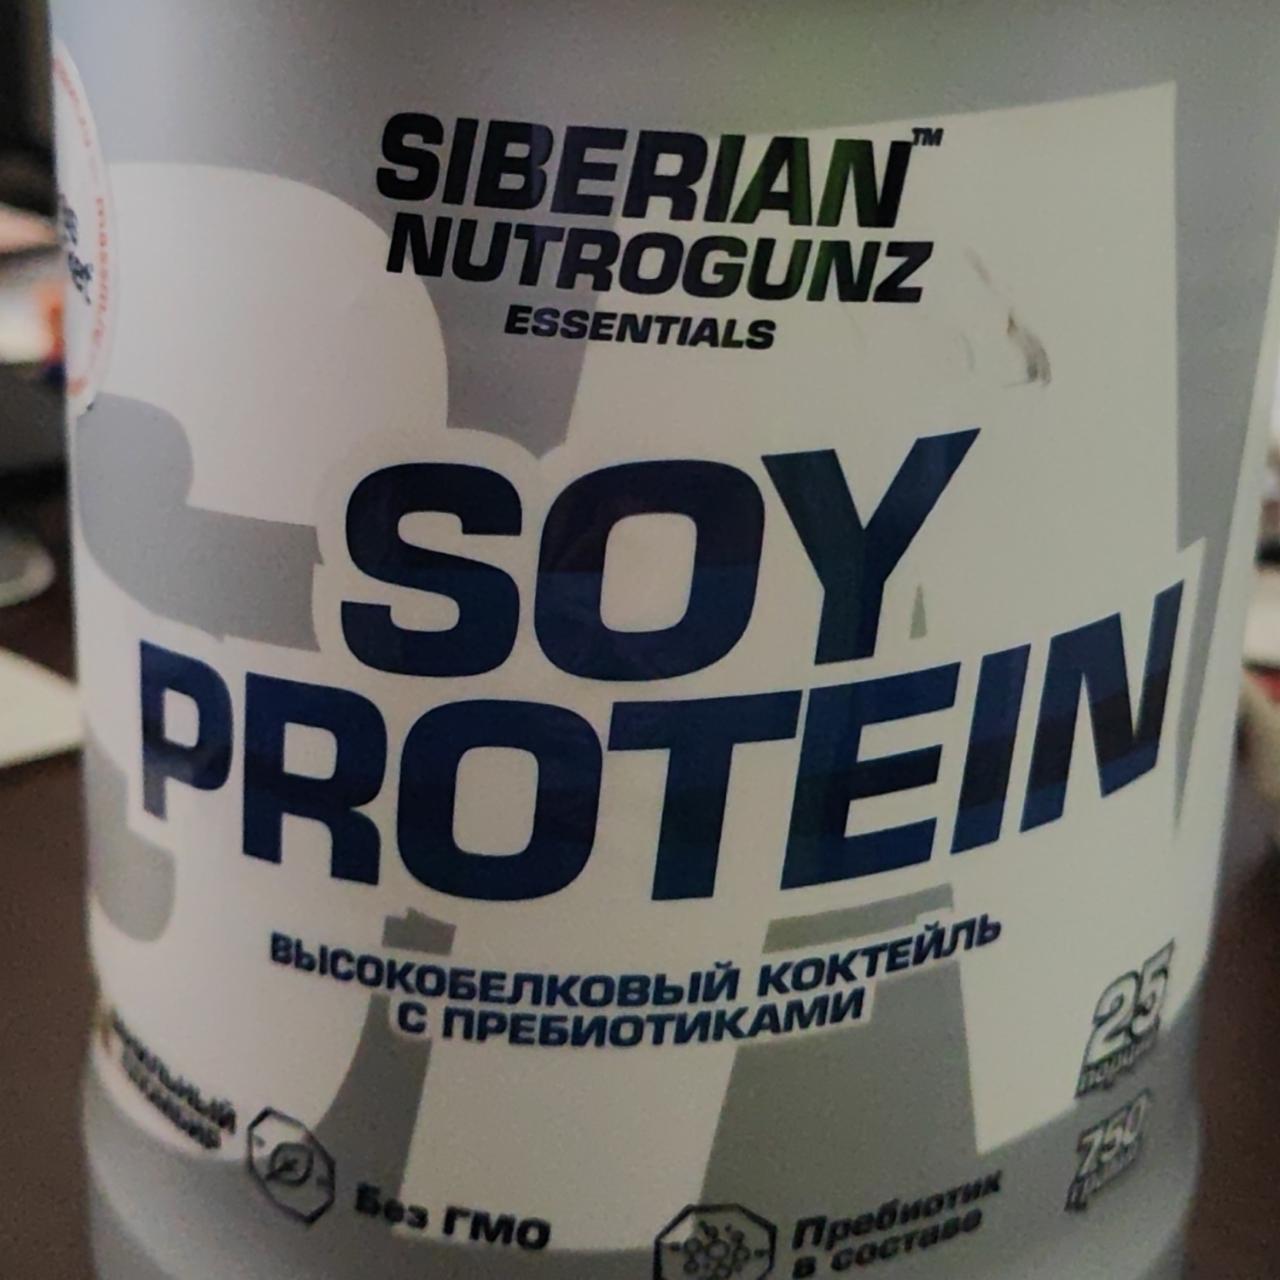 Фото - Soy protein Высокобелковый коктейль с пребиотиками Siberian nutrogunz